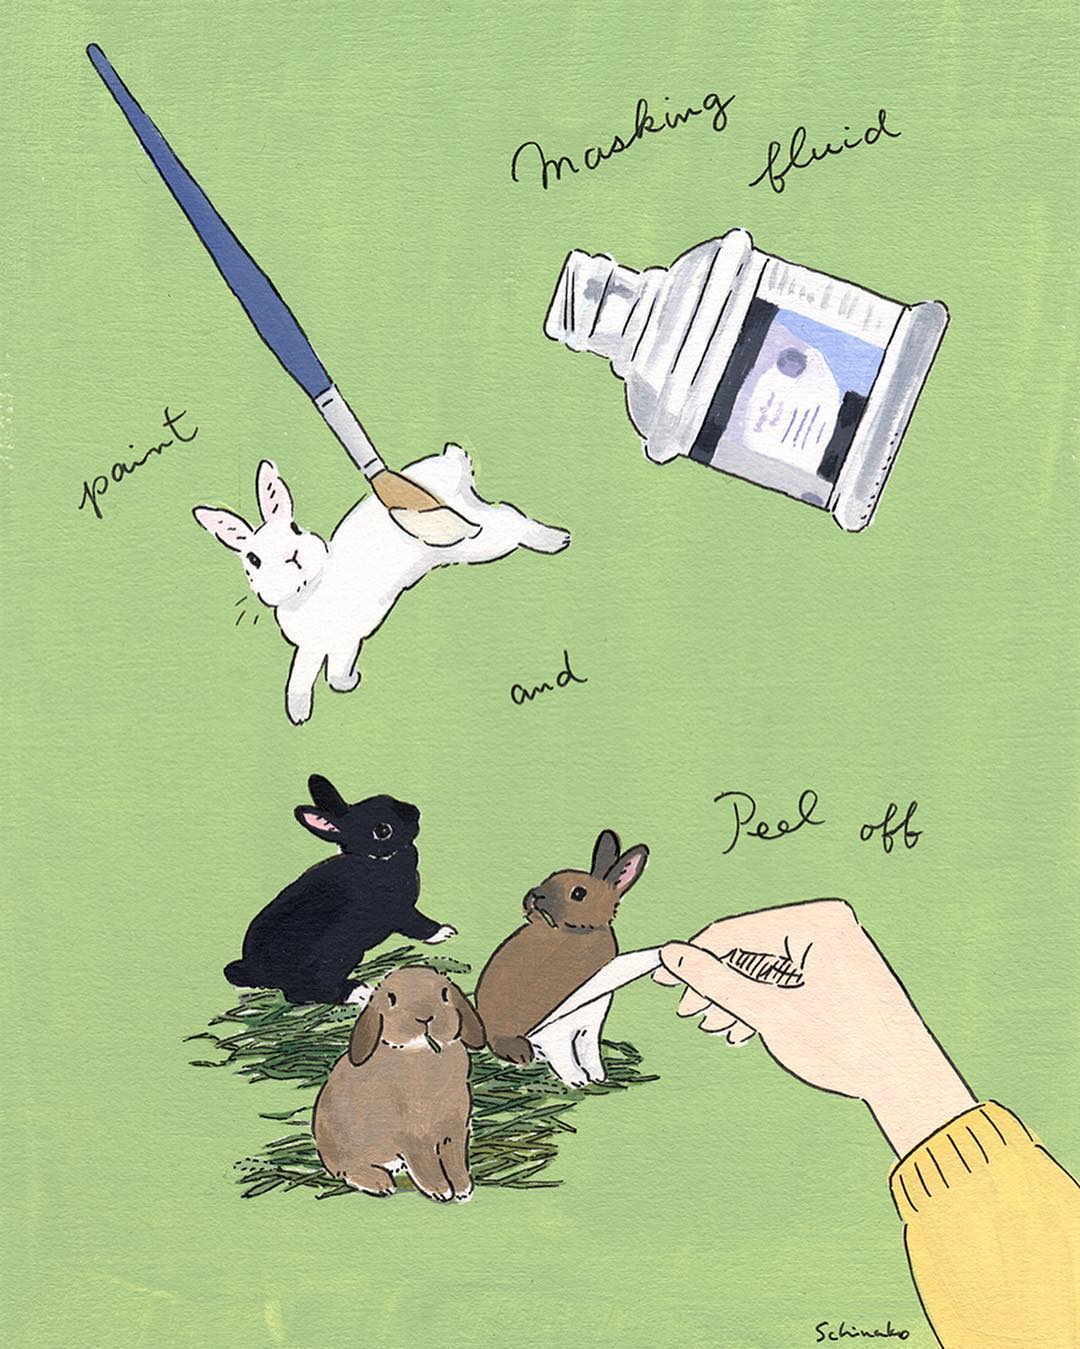 兔子与女主人的快乐生活：森山功子(Schinako Moriyama)插画作品